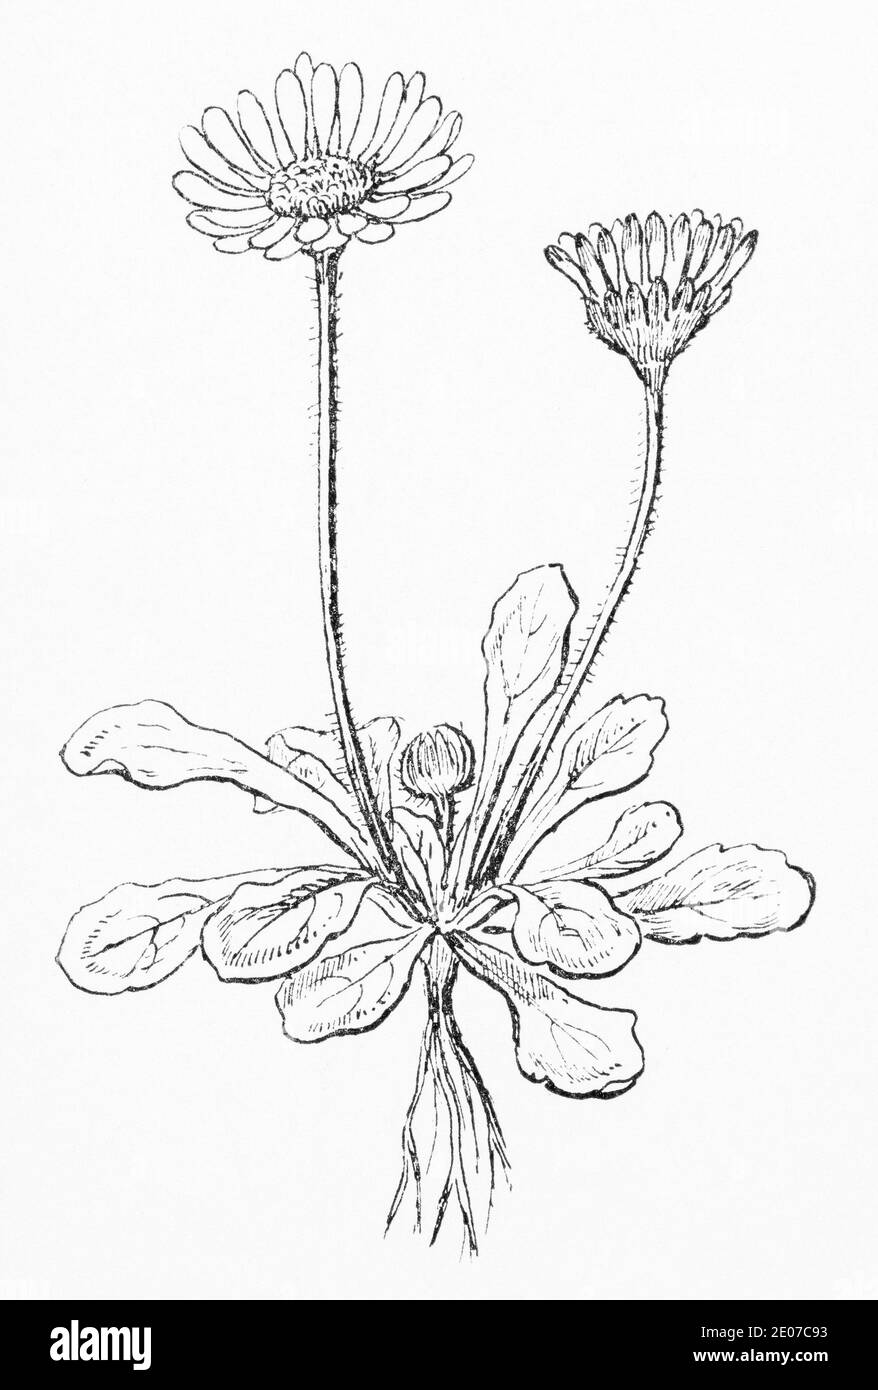 Ancienne gravure d'illustration botanique de Daisy / Bellis perennis. Plante médicinale traditionnelle. Voir Remarques Banque D'Images